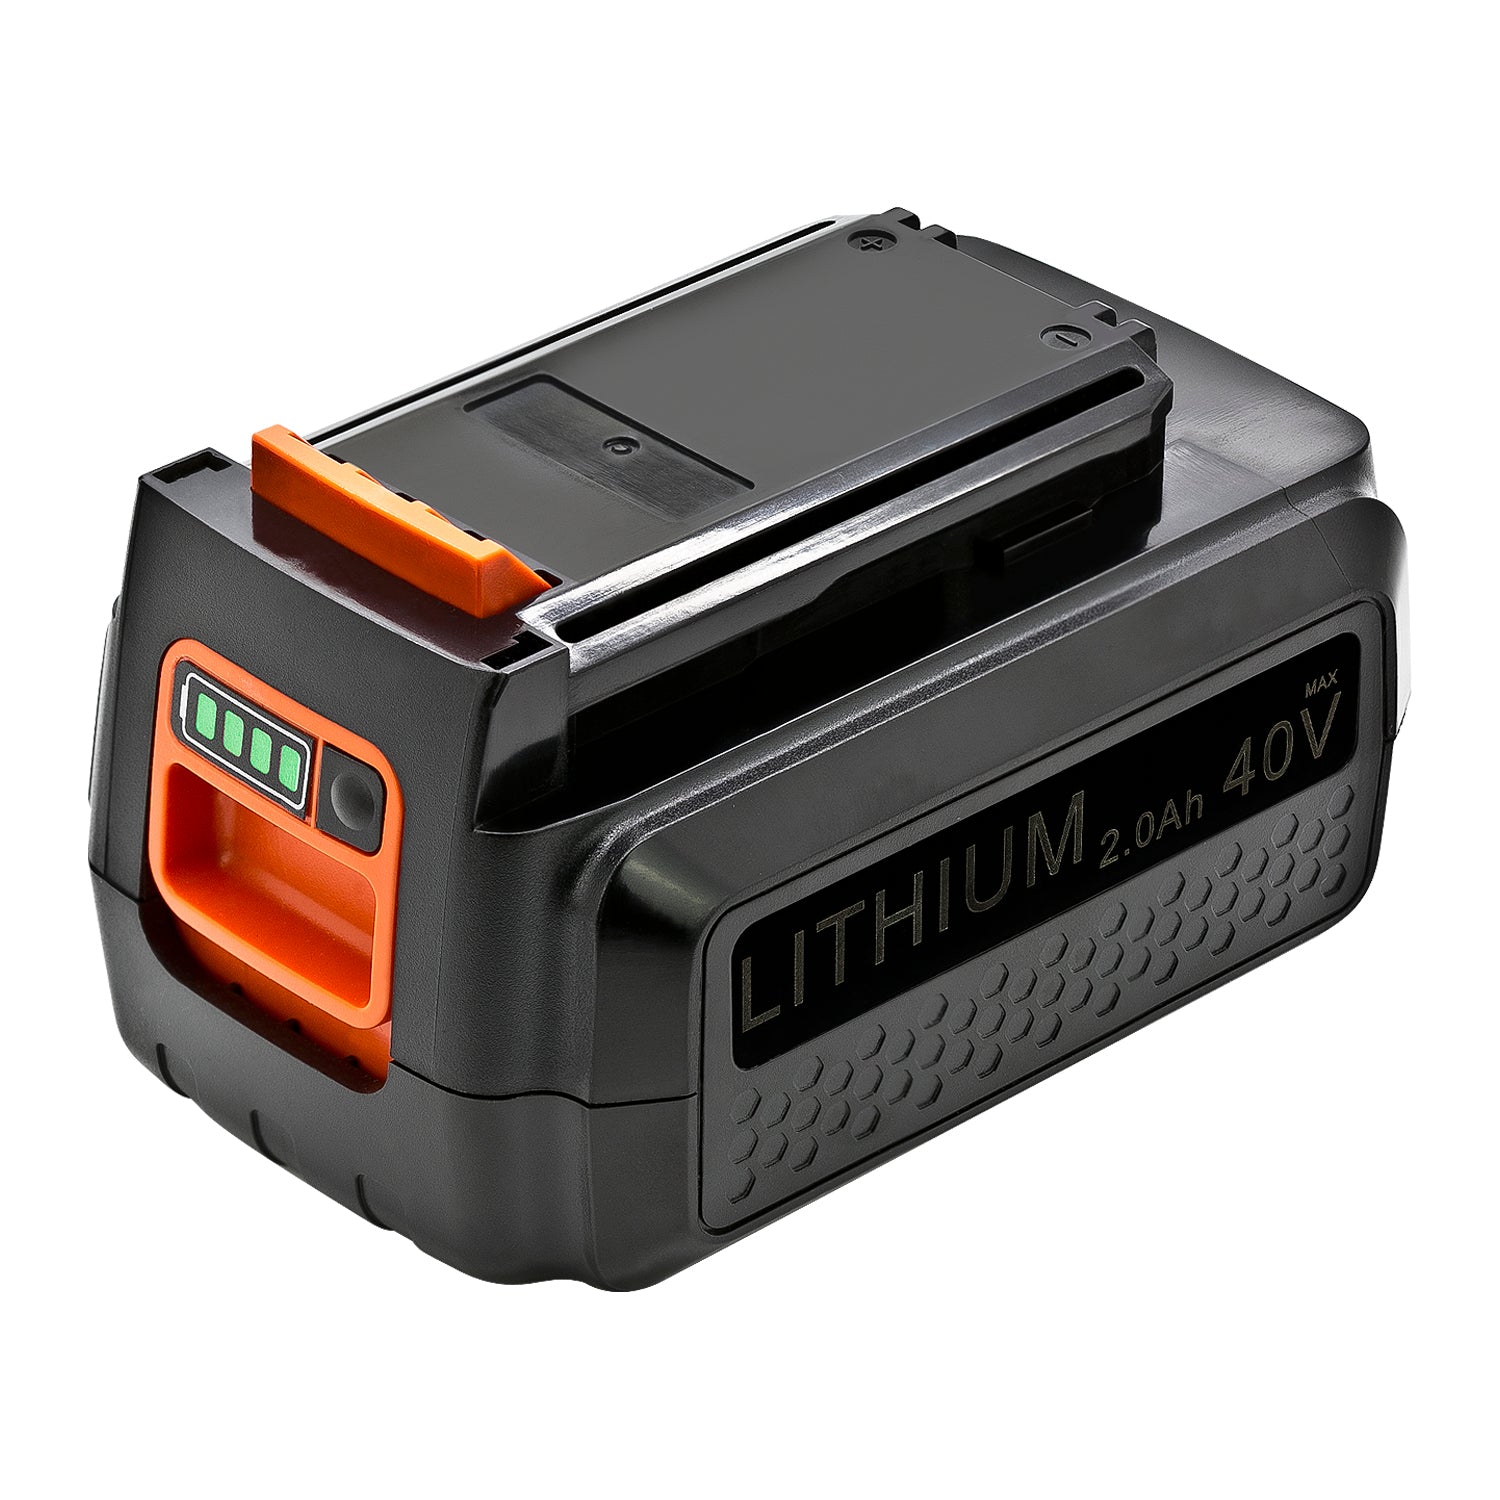 New Battery for Black & Decker LSW36 LSW36B LSWV36 LSWV36B LSW40C